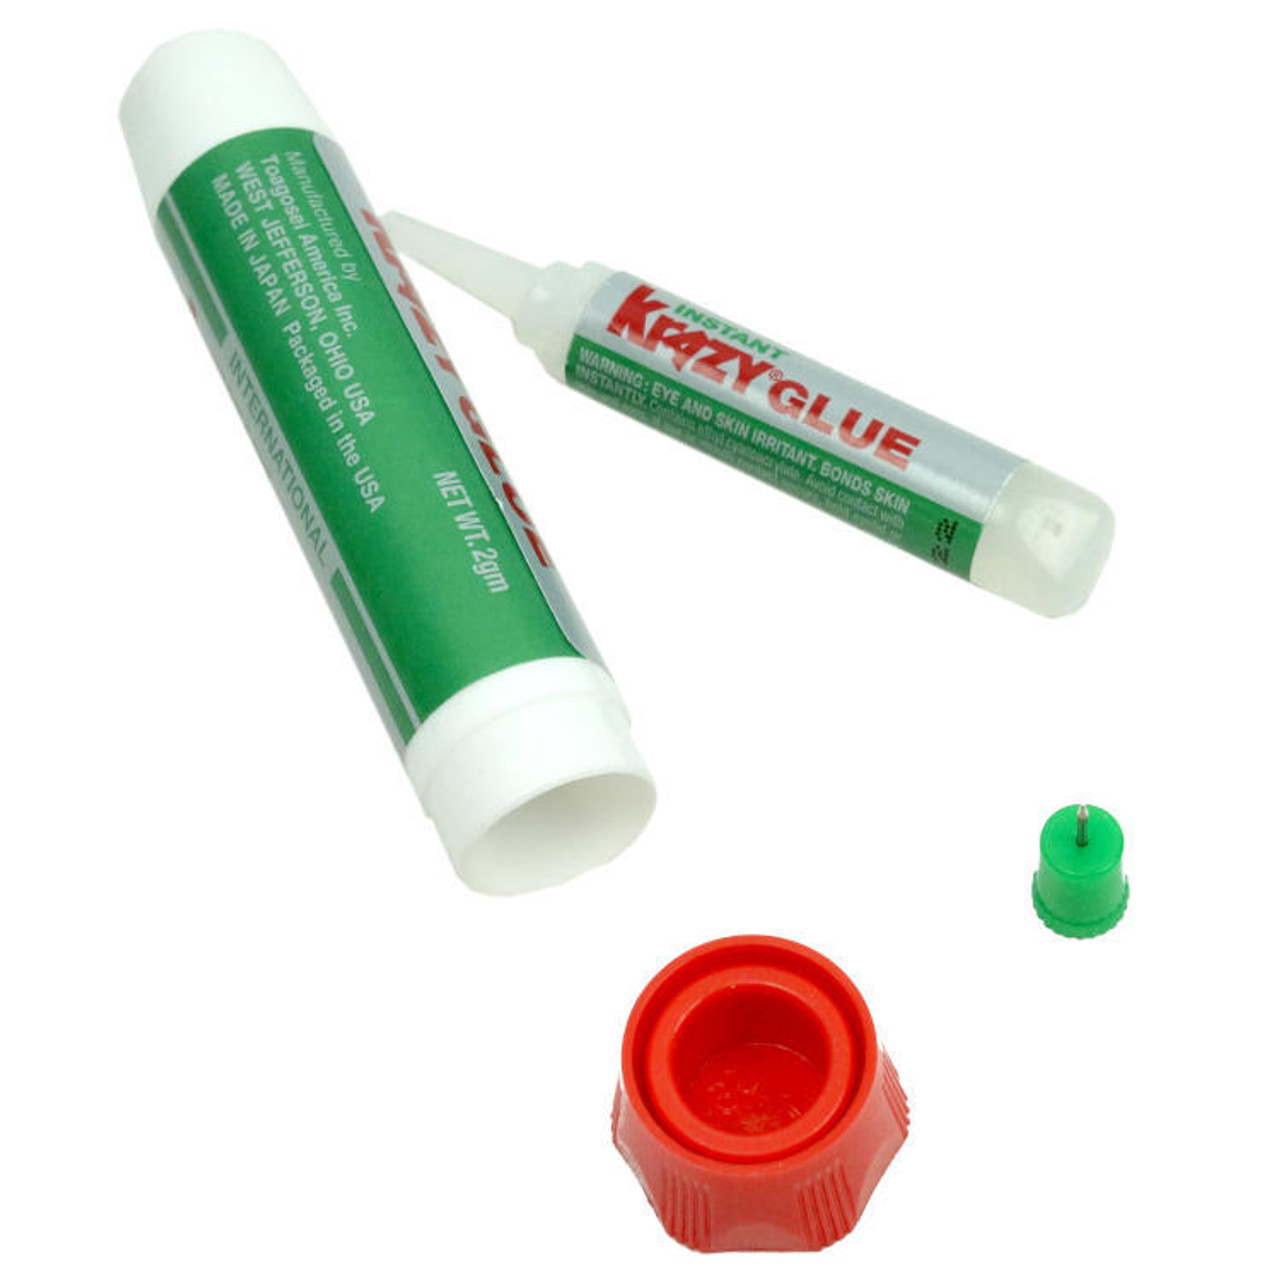  Krazy Glue Original Crazy Super Glue All Purpose